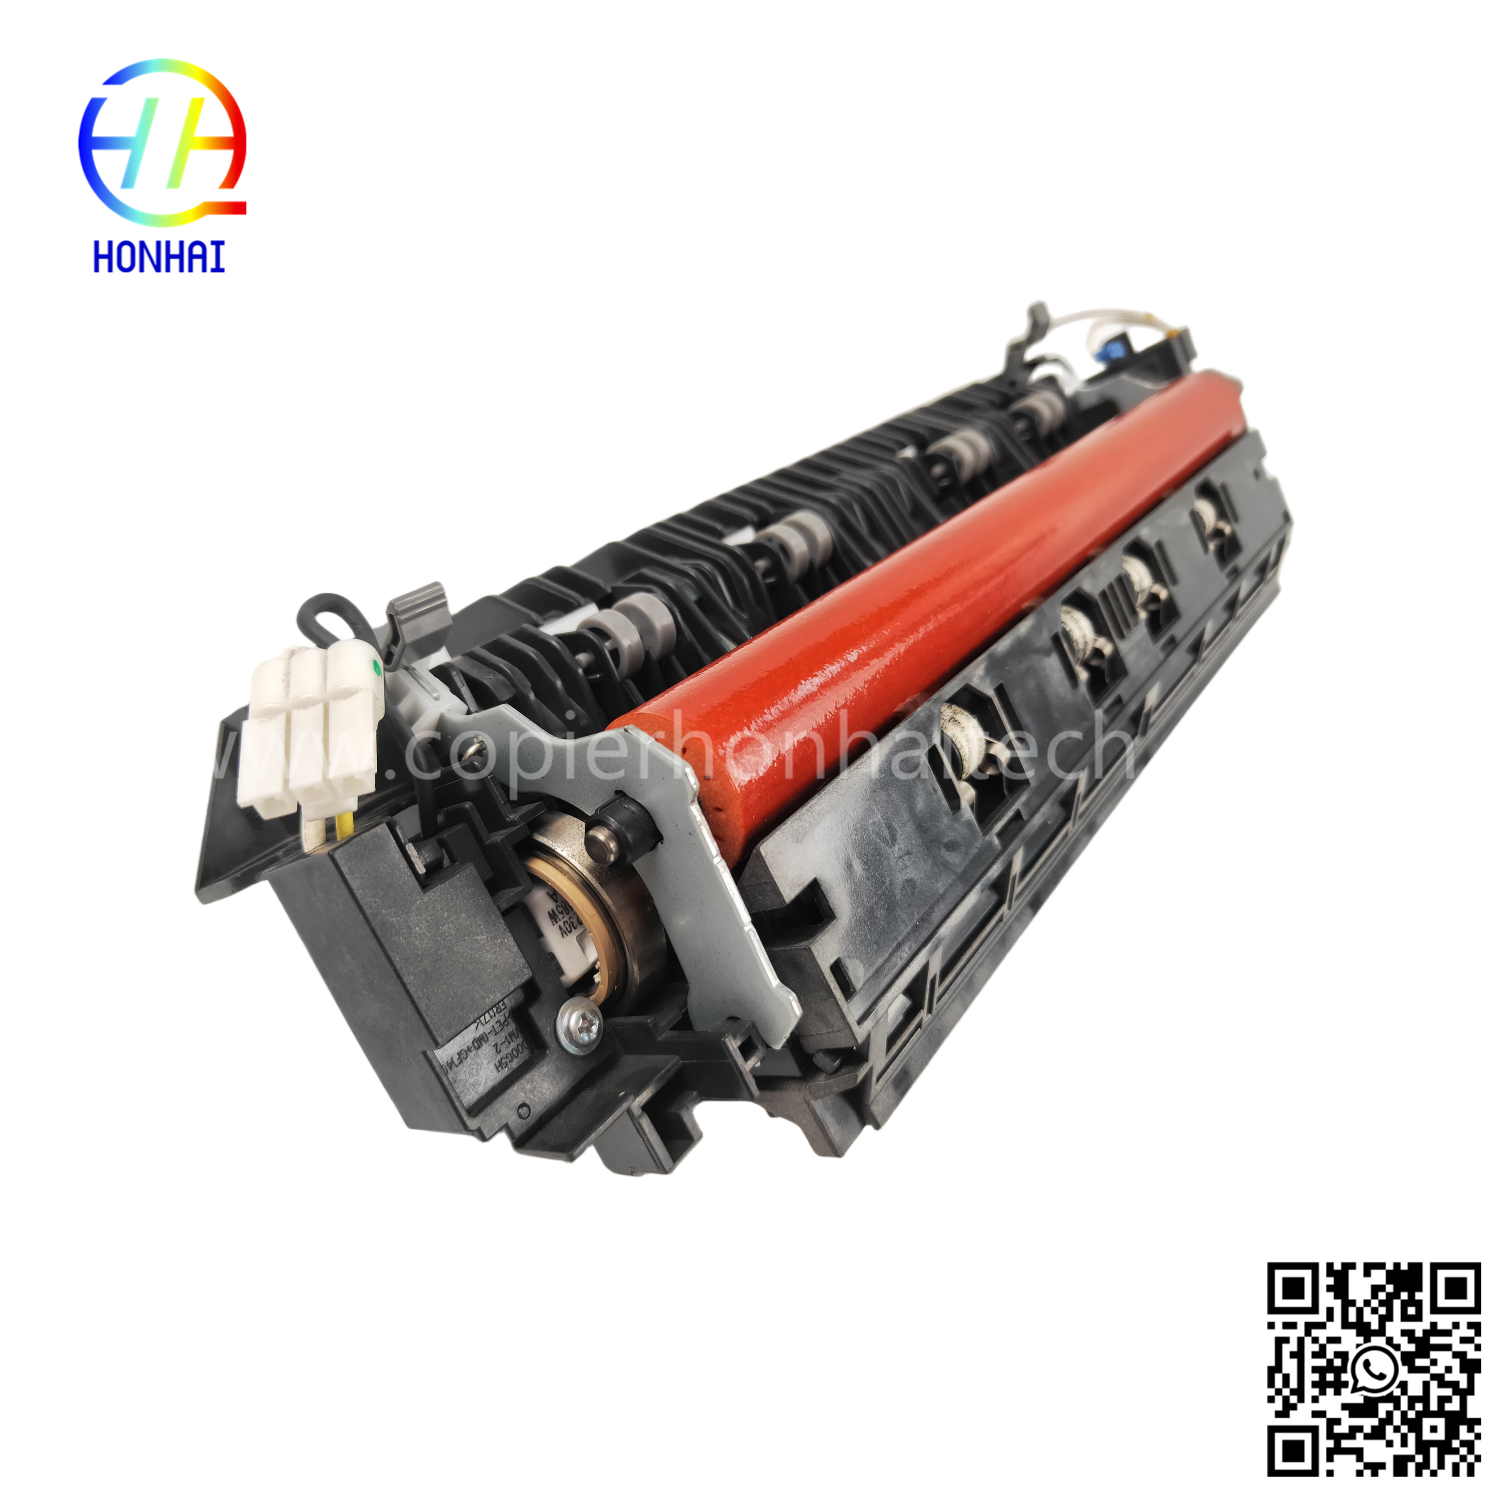 https://www.copierhonhaitech.com/fuser-unit-220v-for-brother-mfc-l3750cdw-mfc-l3770cdw-fuser-assemble-product/